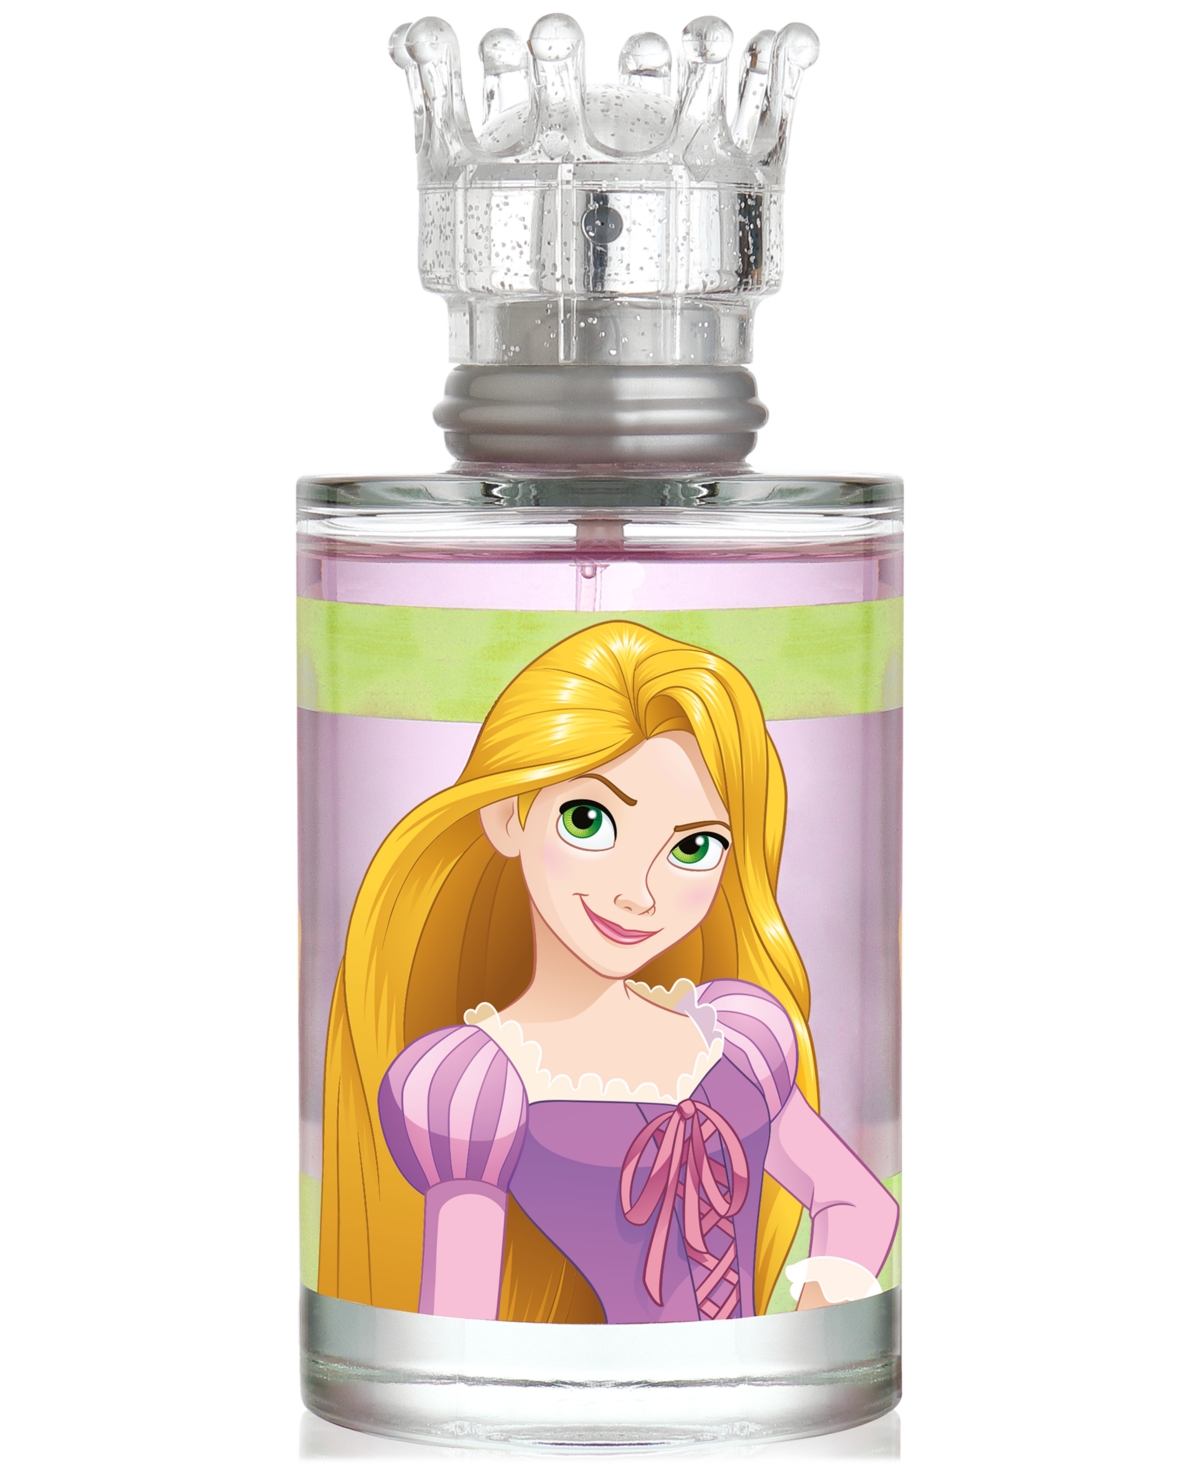 Princess Rapunzel Eau de Toilette Spray, 3.4 oz.